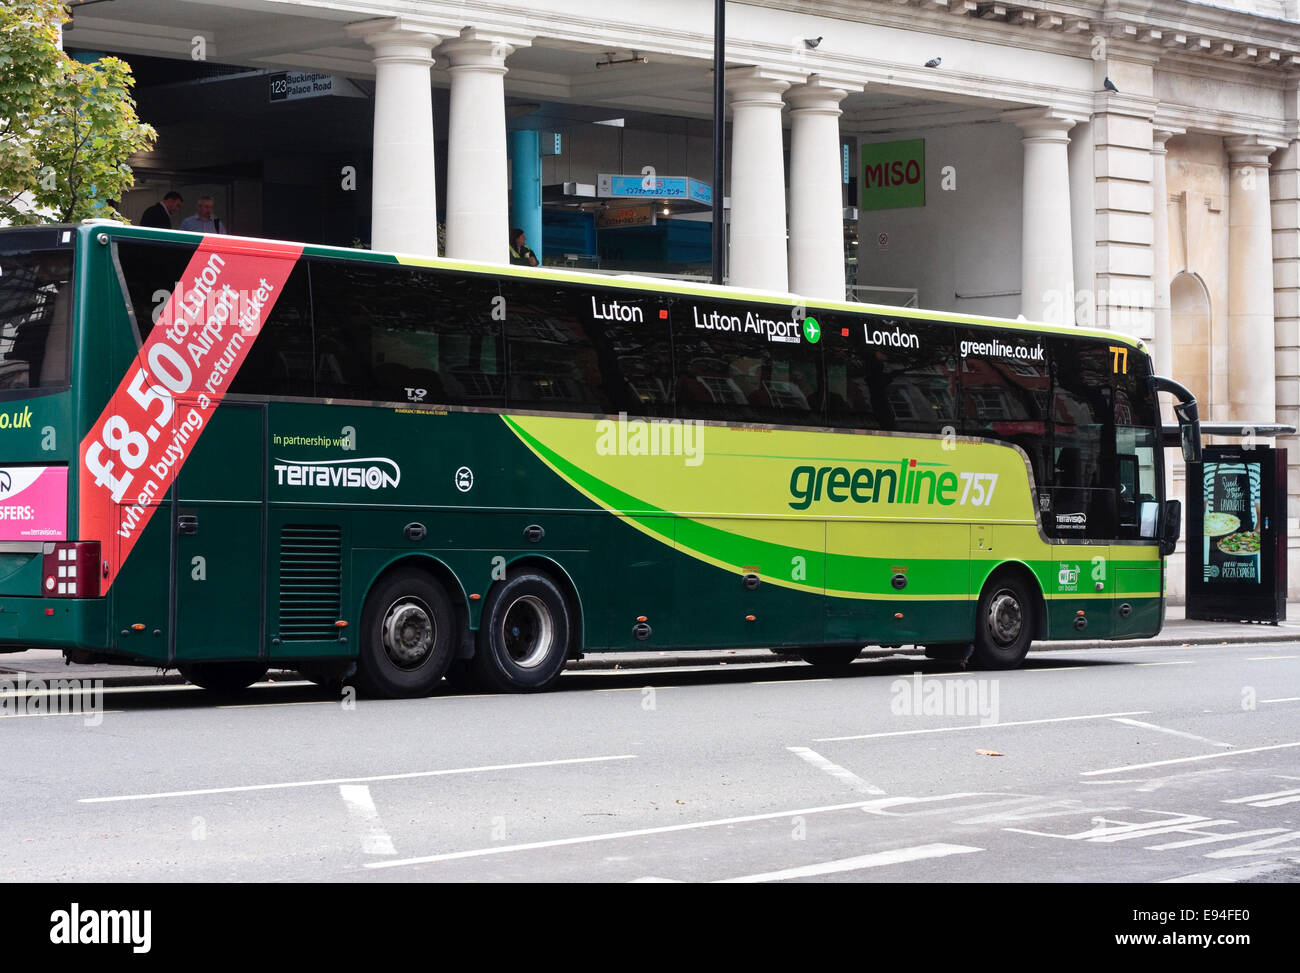 Ein Trainer der Greenline Company geparkt am Straßenrand, Victoria, London, UK Stockfoto